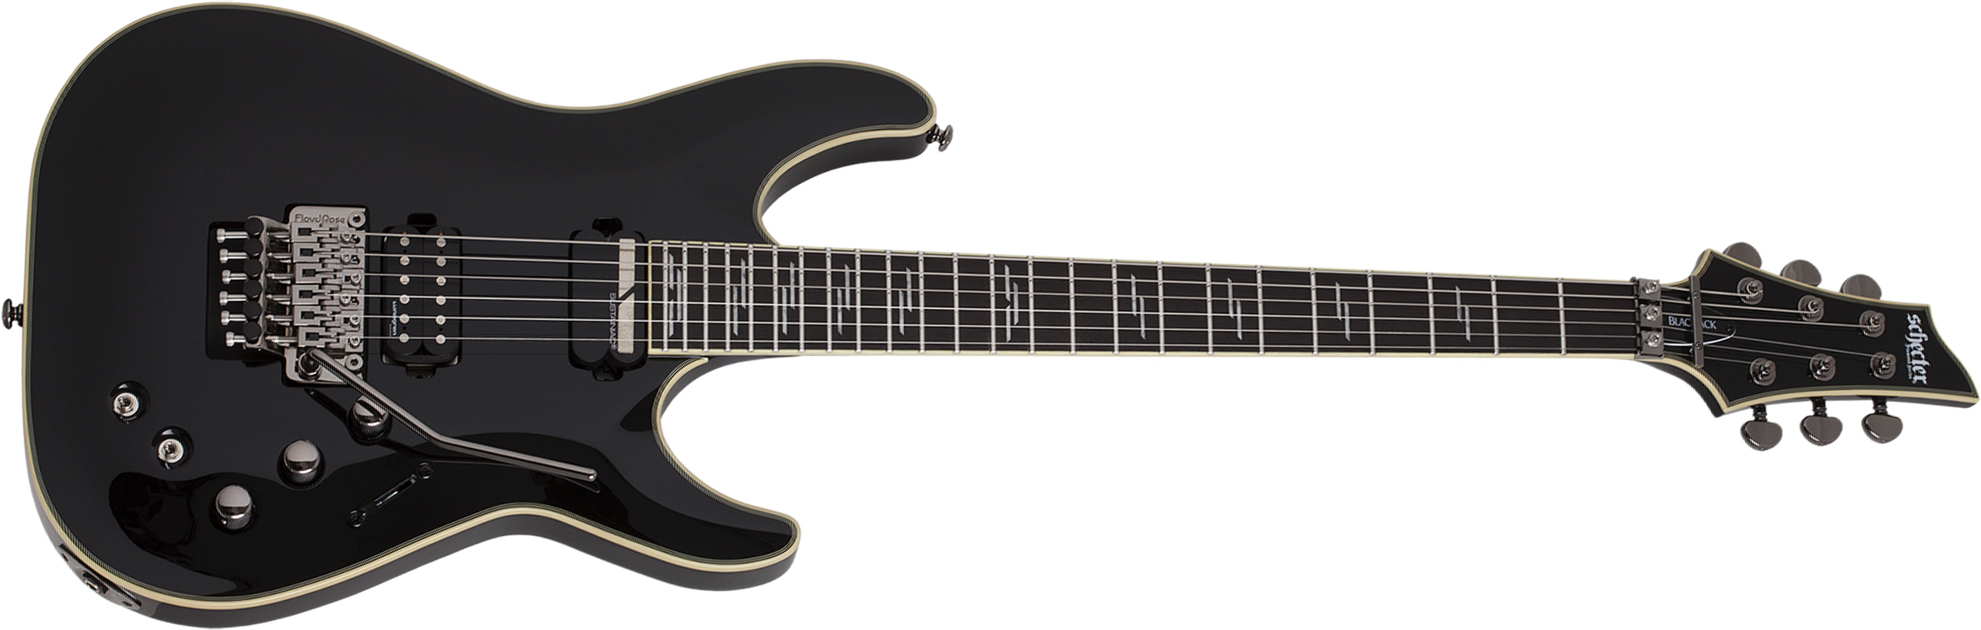 Schecter C-1 Fr S Blackjack 2h Lundgren Sustainiac Eb - Black - Str shape electric guitar - Main picture